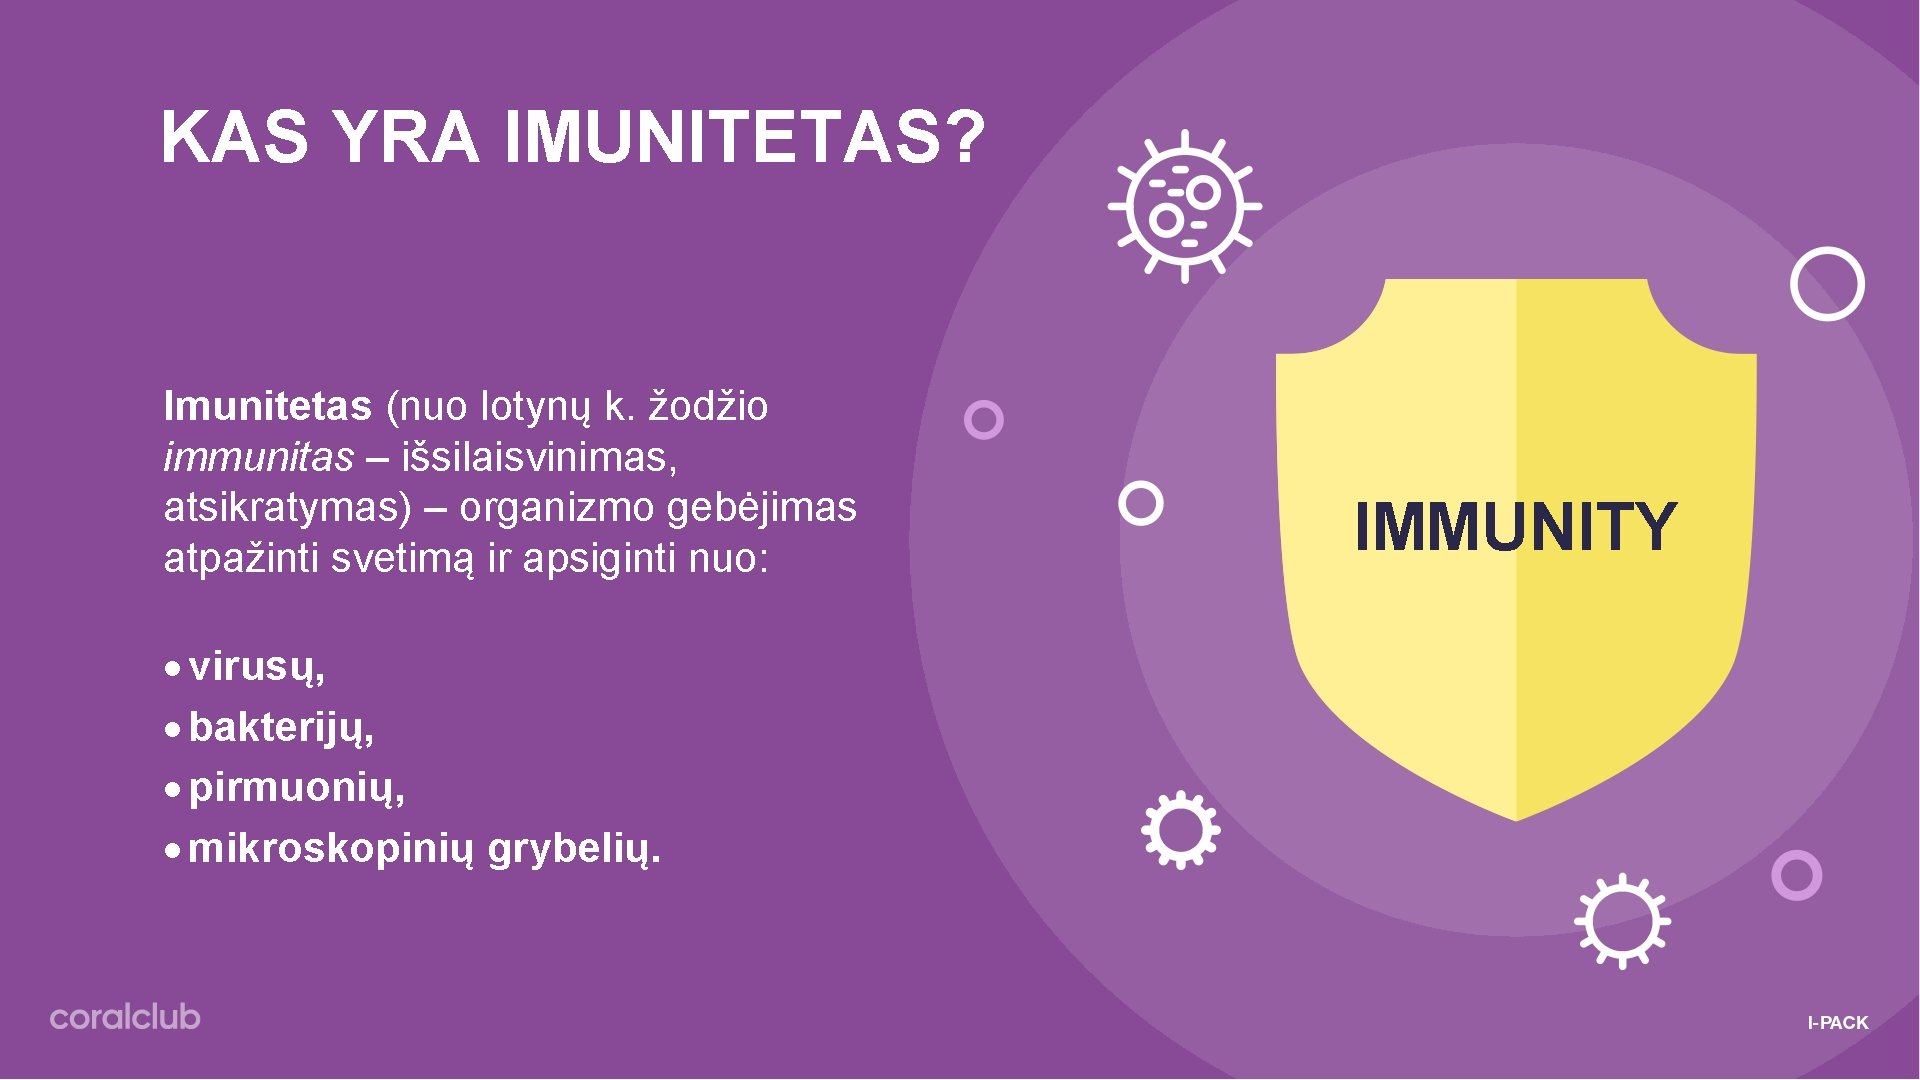 KAS YRA IMUNITETAS? Imunitetas (nuo lotynų k. žodžio immunitas – išsilaisvinimas, atsikratymas) – organizmo